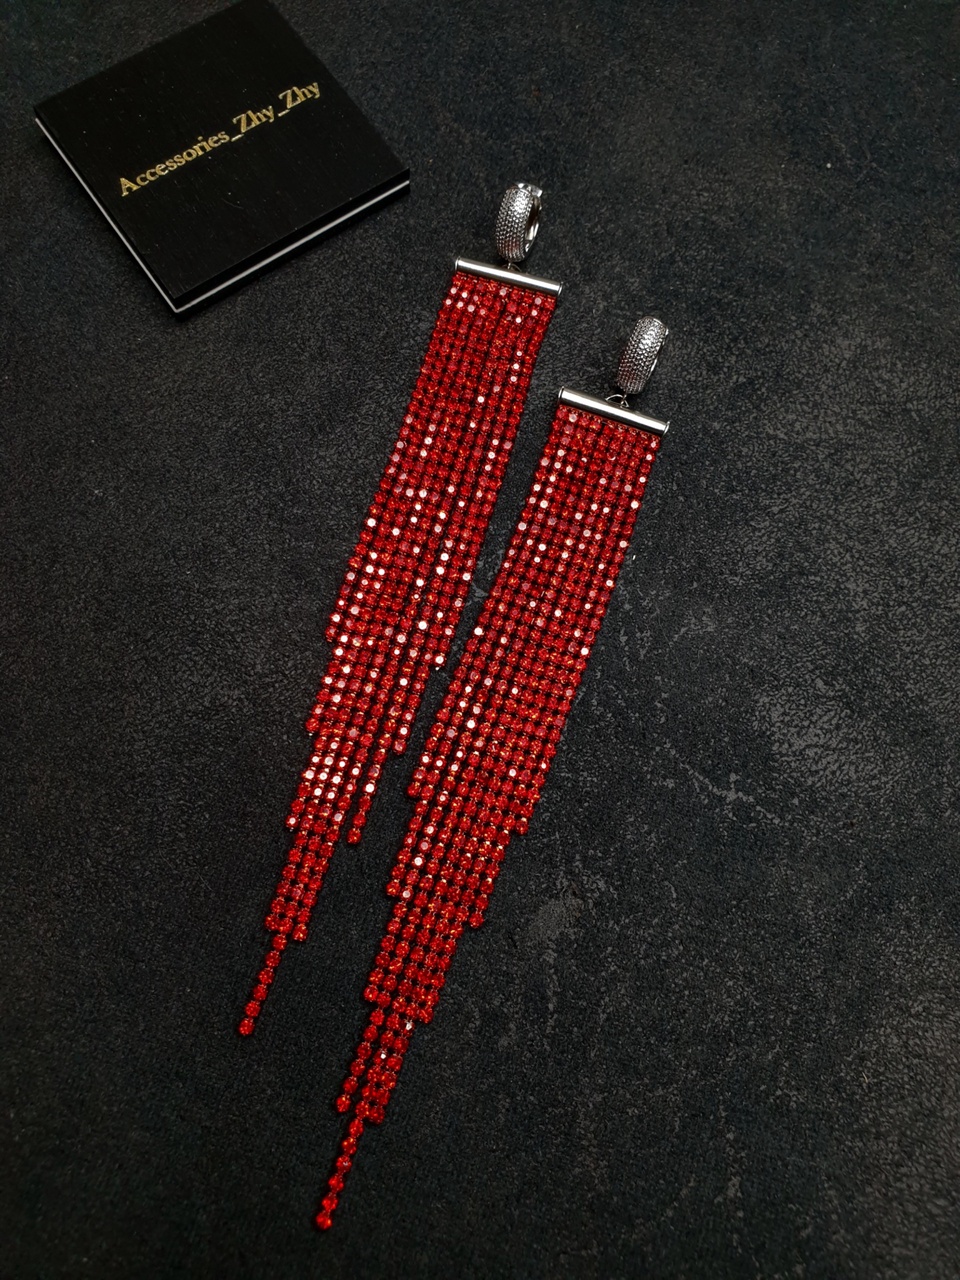 Длинные акцентные серьги из ярких стразовых цепей - 3 000 ₽, заказать онлайн.